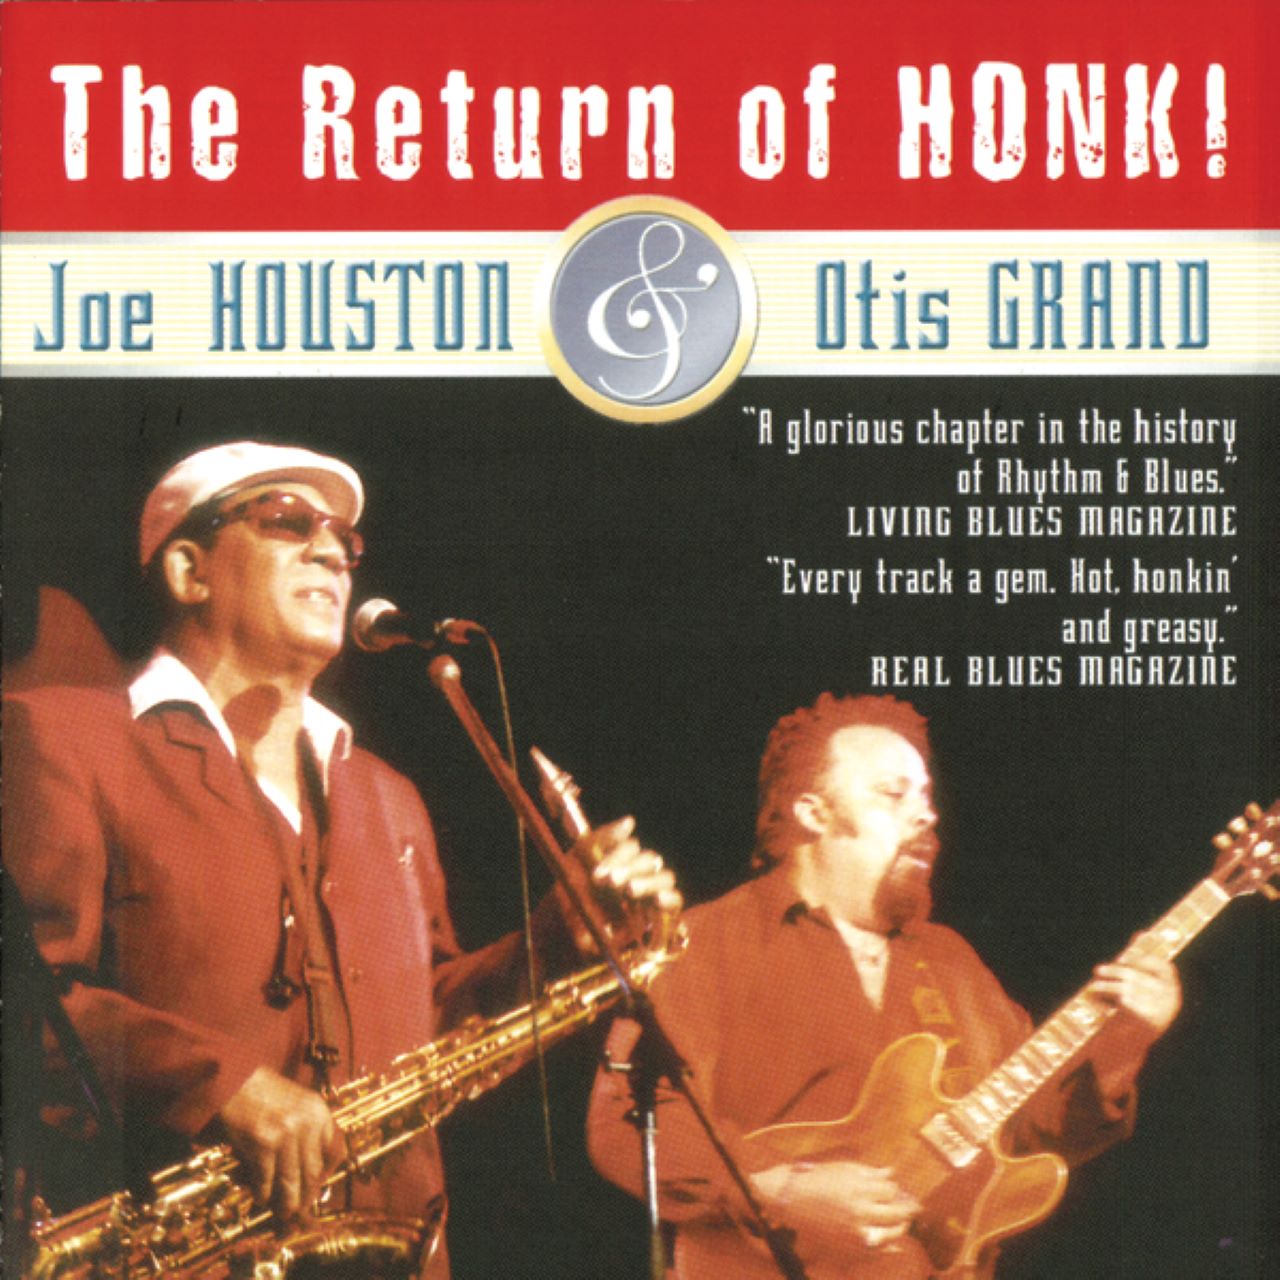 Joe Houston & Otis Grand – The Return Of Honk cover album